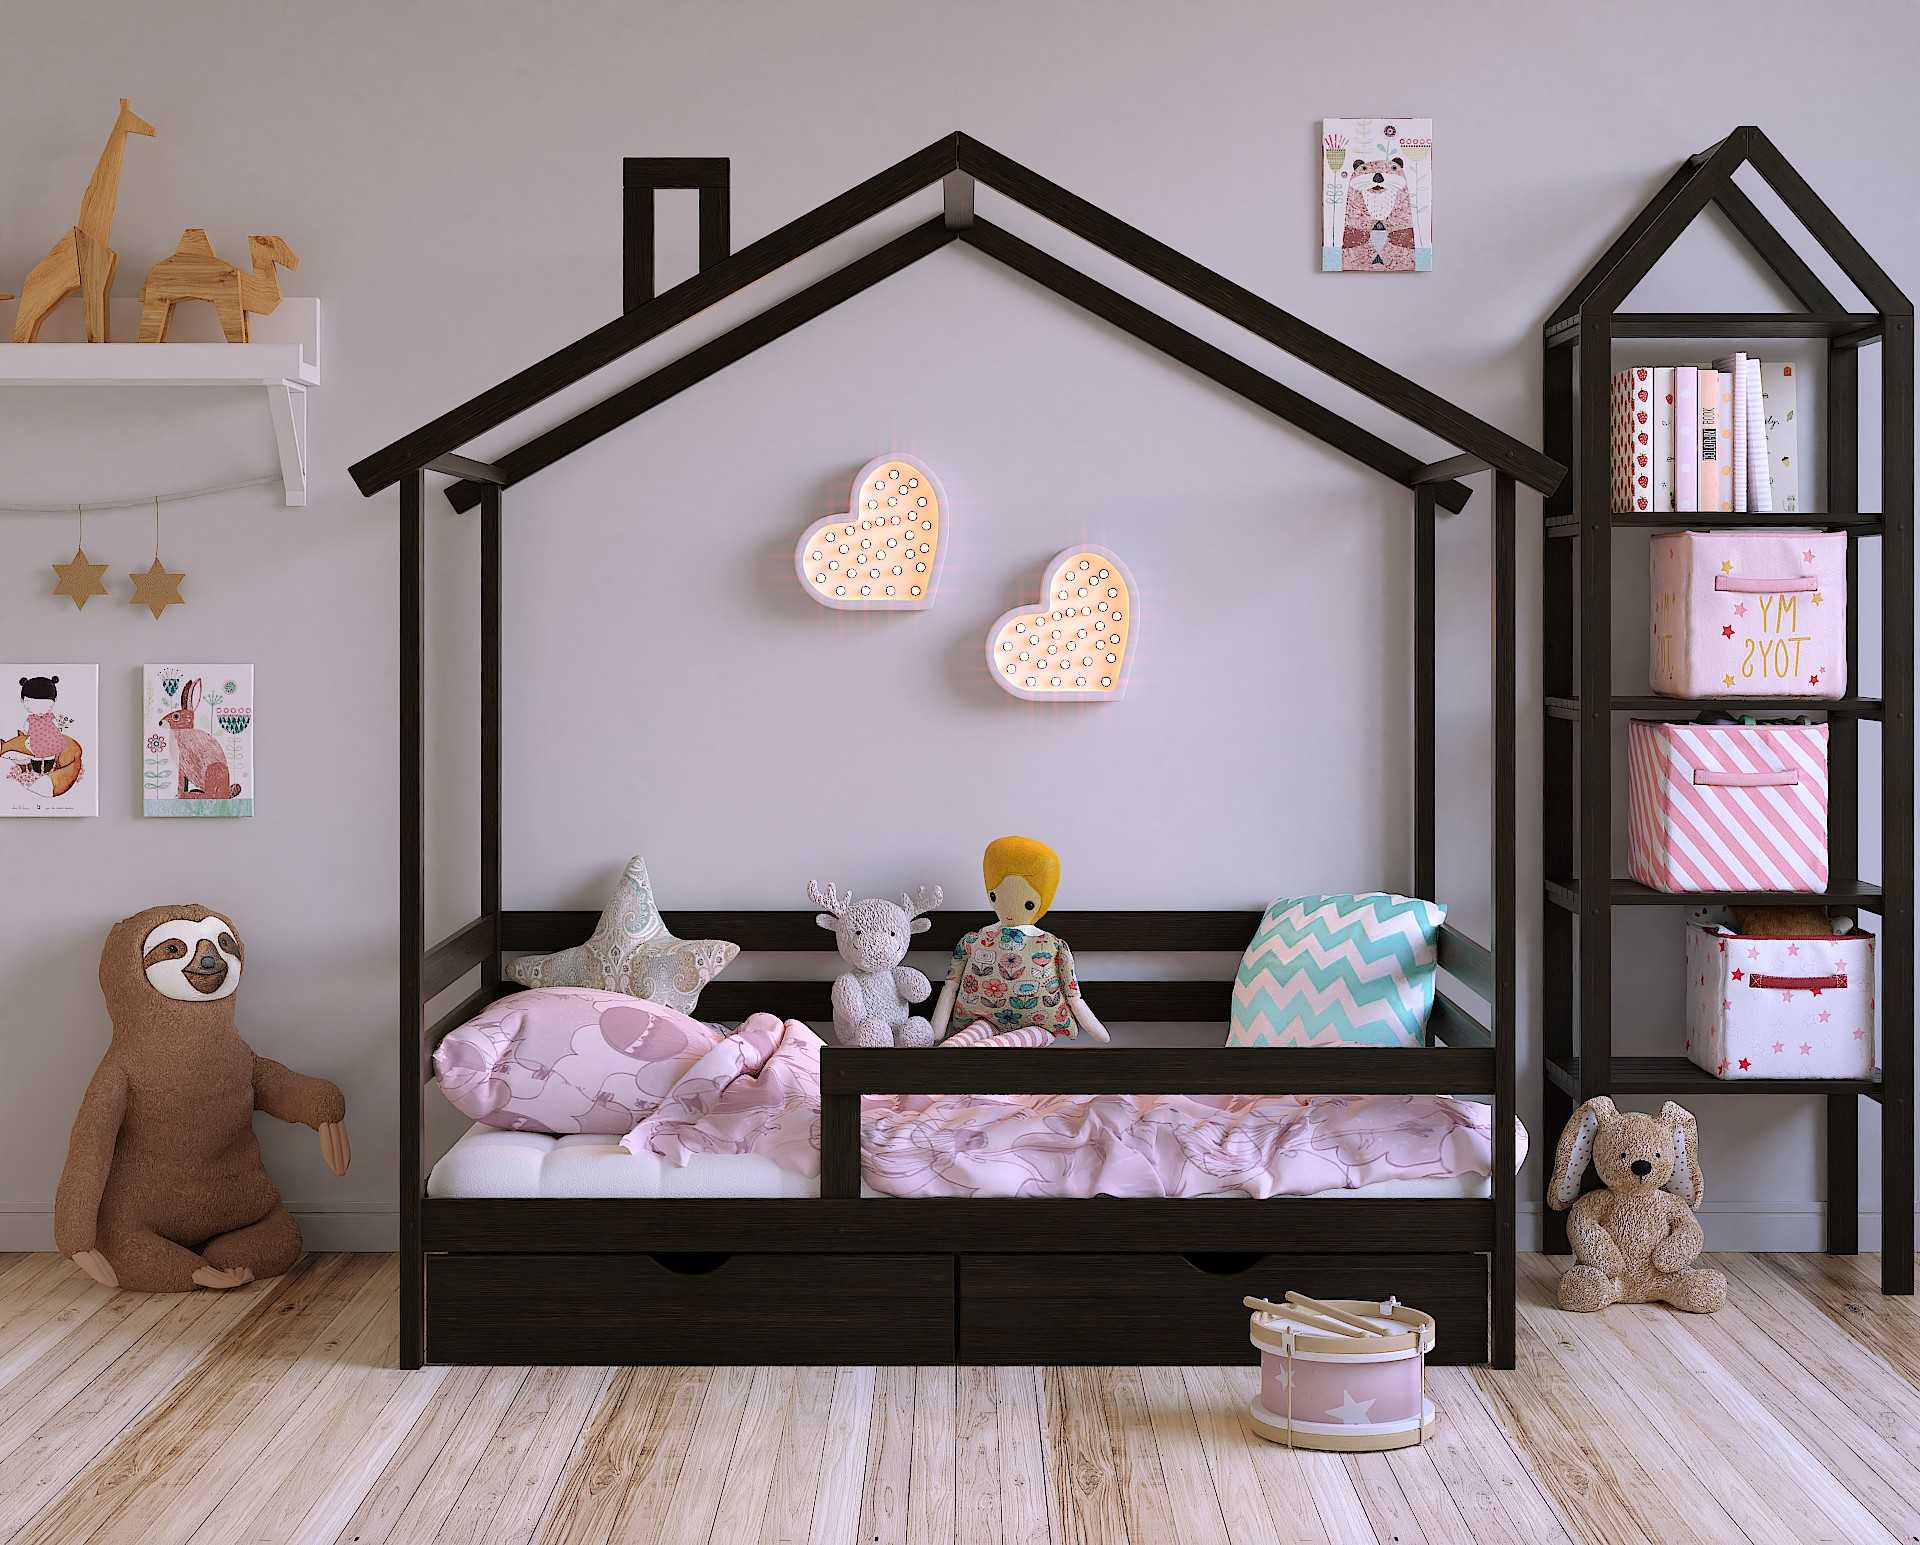 Игровой домик кровать для ребенка. детская кровать домик - ребенок всегда о такой мечтает.